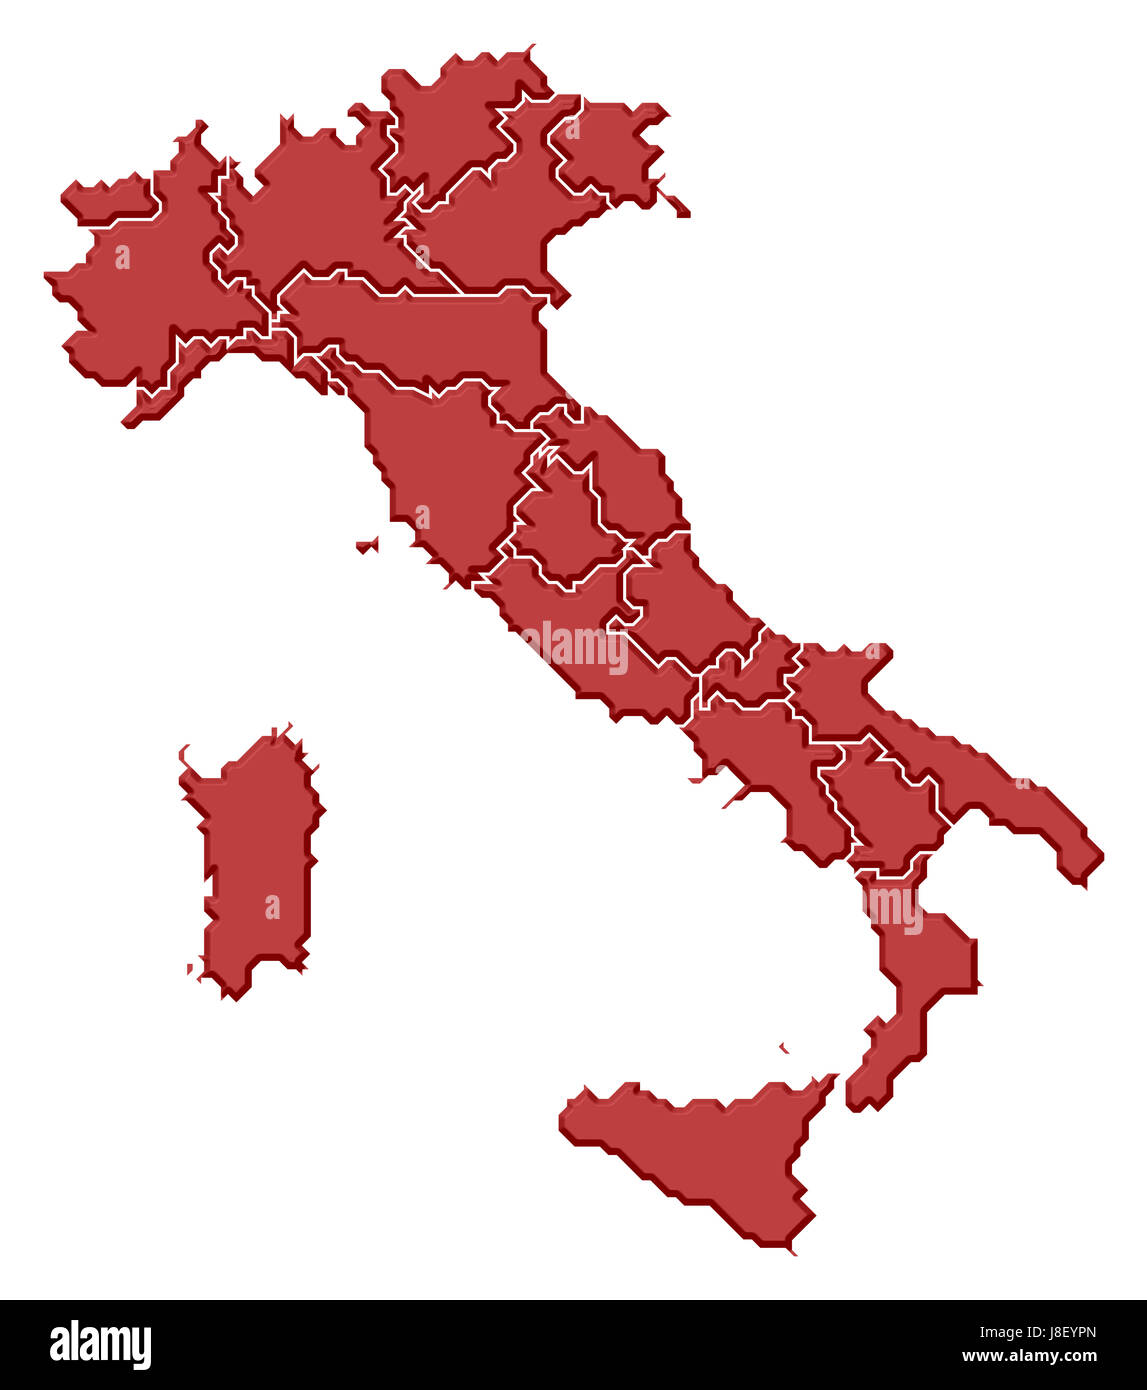 Mappa, Atlas, mappa del mondo, Italia, profilo simbolico, politico, colore, Foto Stock